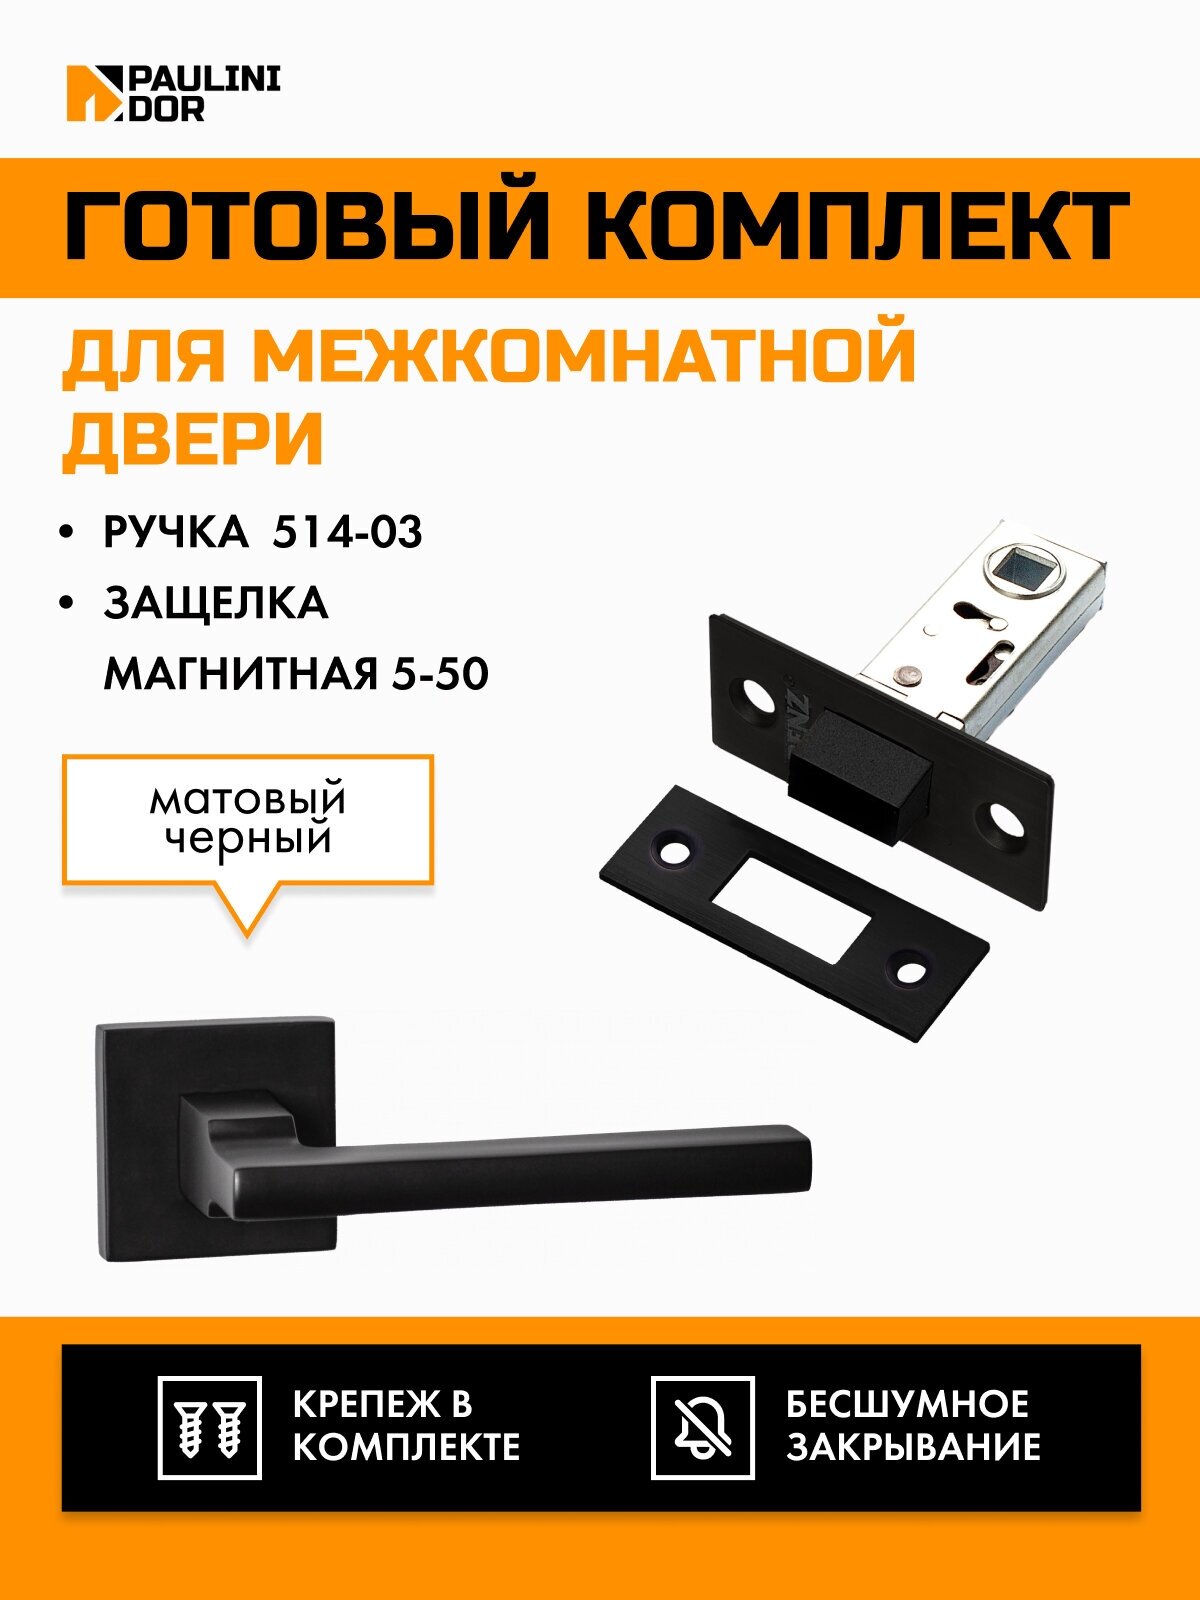 Комплект для межкомнатной двери PAULINIDOR ручки 514-02 + защелка магнитная 5-50, Черный